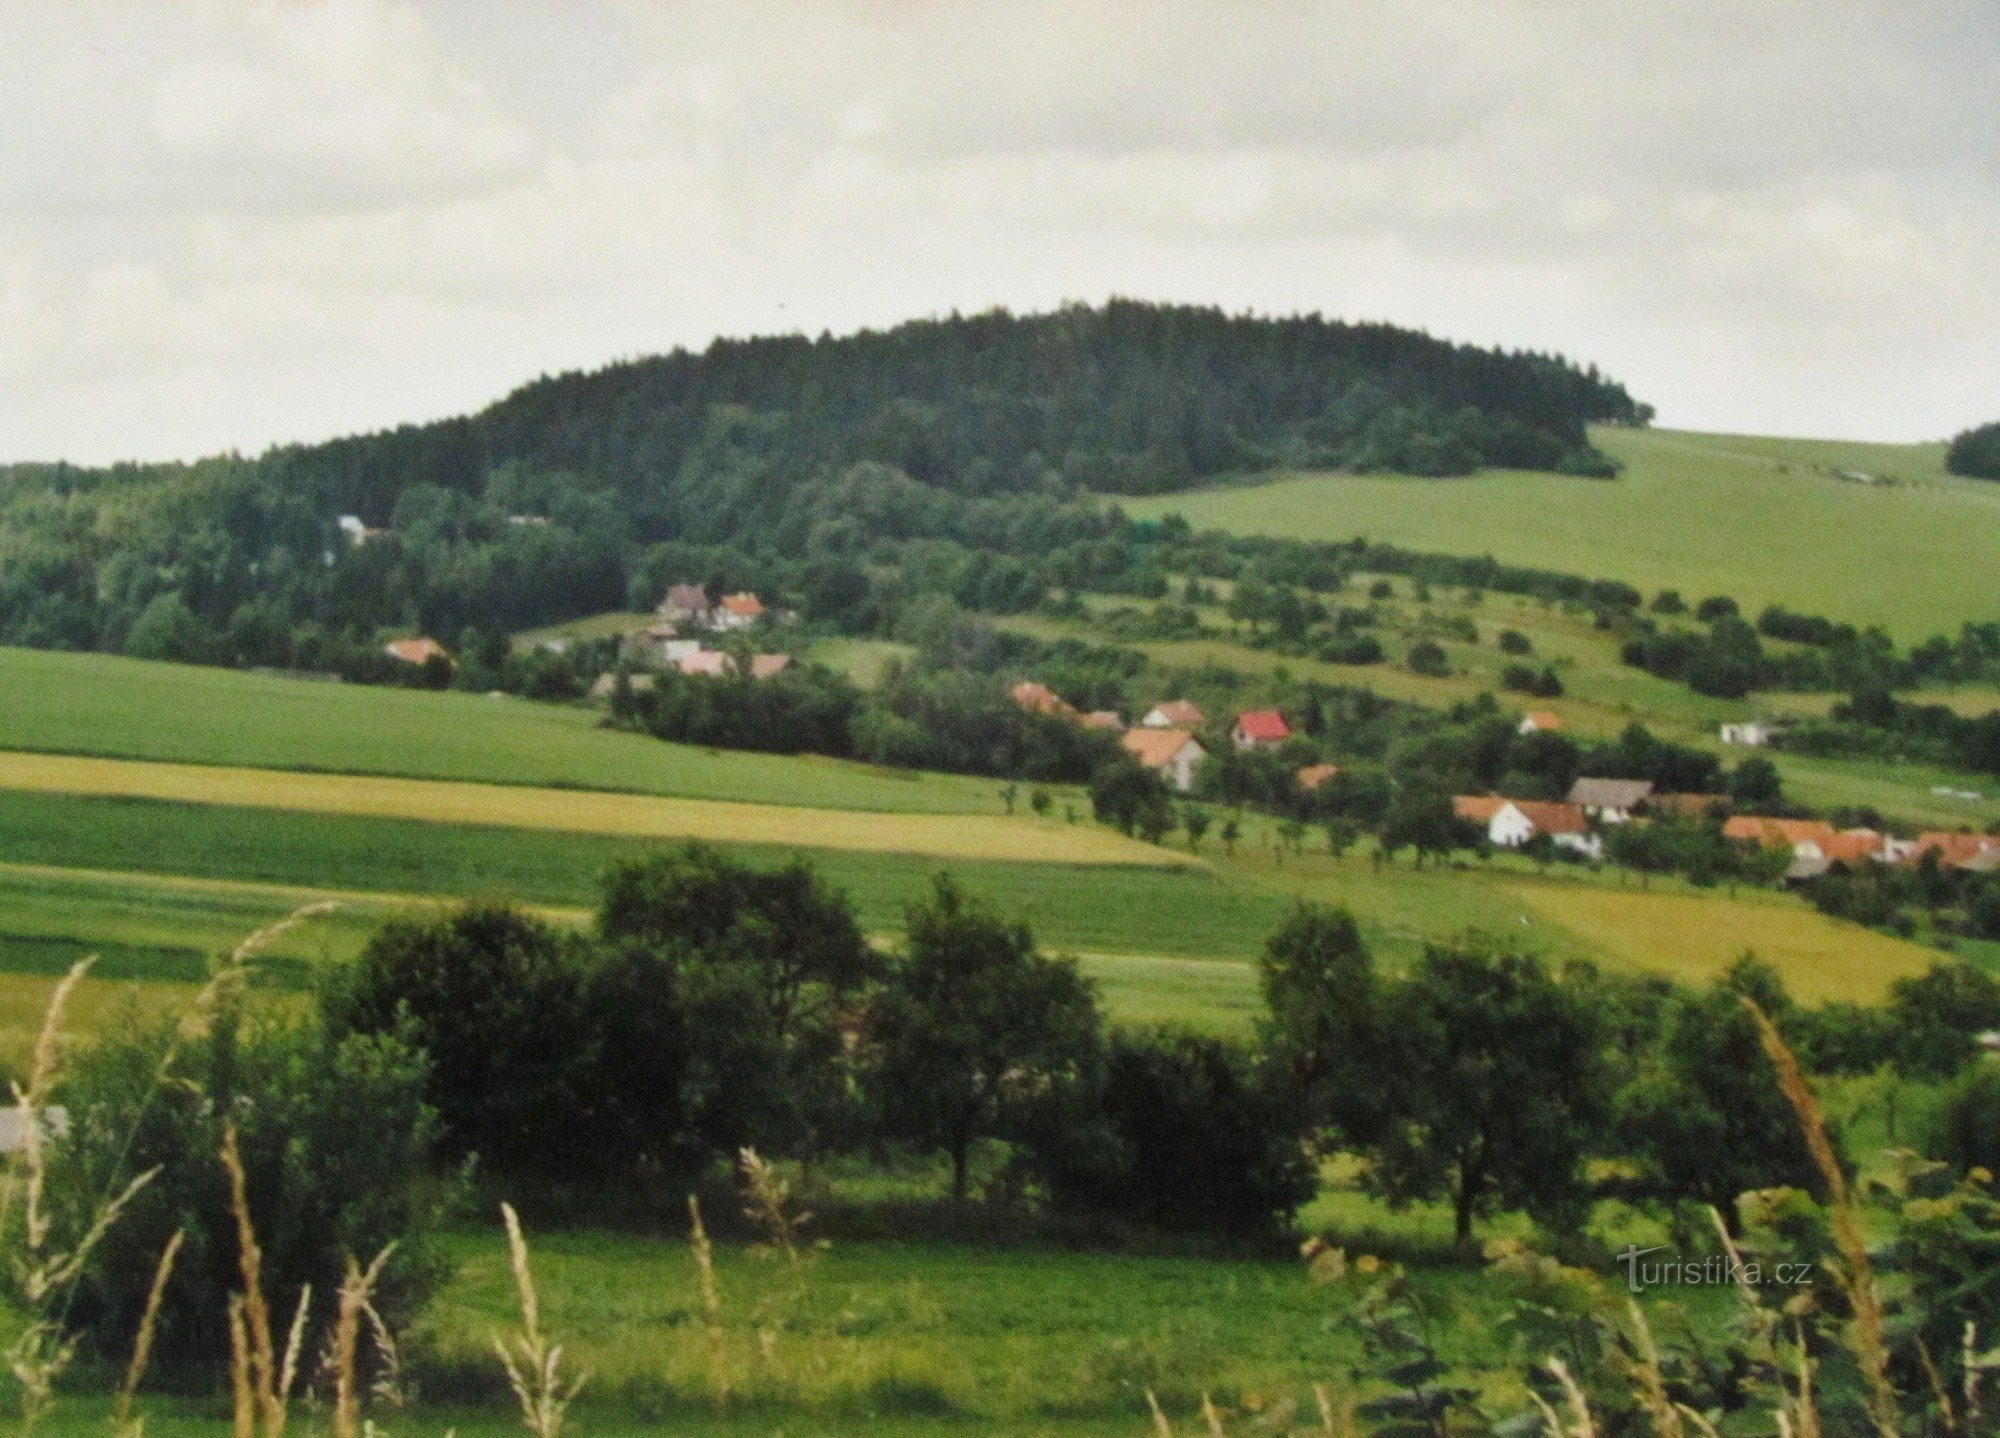 Путешествие в горную местность - 2. От Слоупа через Раец и Черную Гору до Лысице - ретро 2001 г.